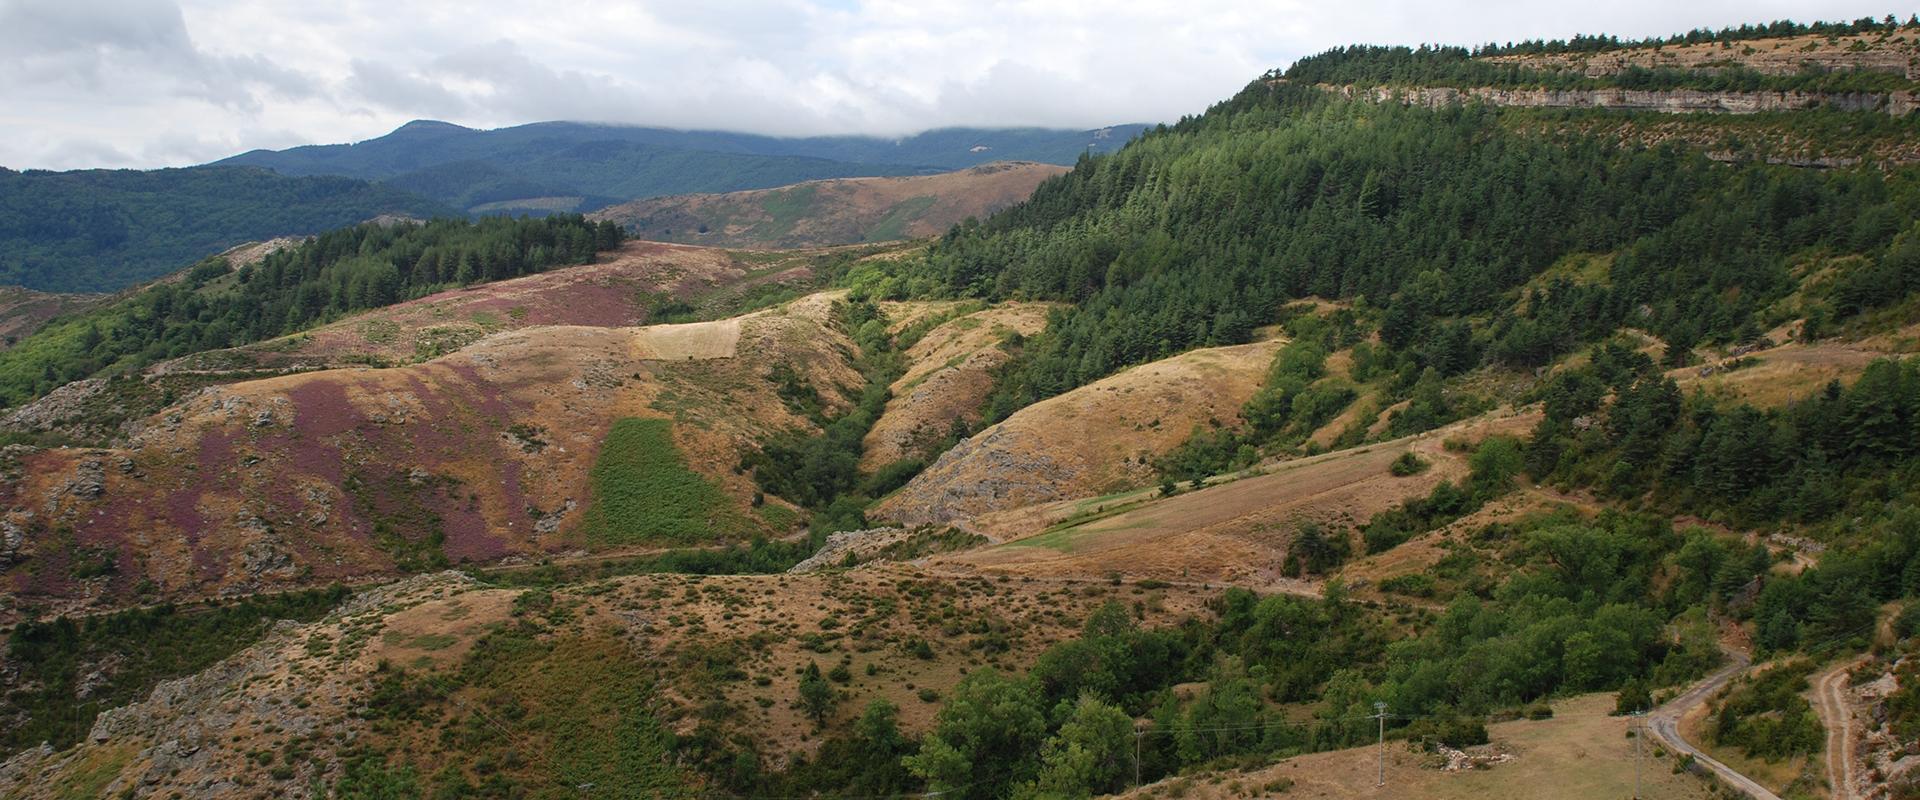 An escarpment landscape on the edge of the Causse Méjean, Lozère